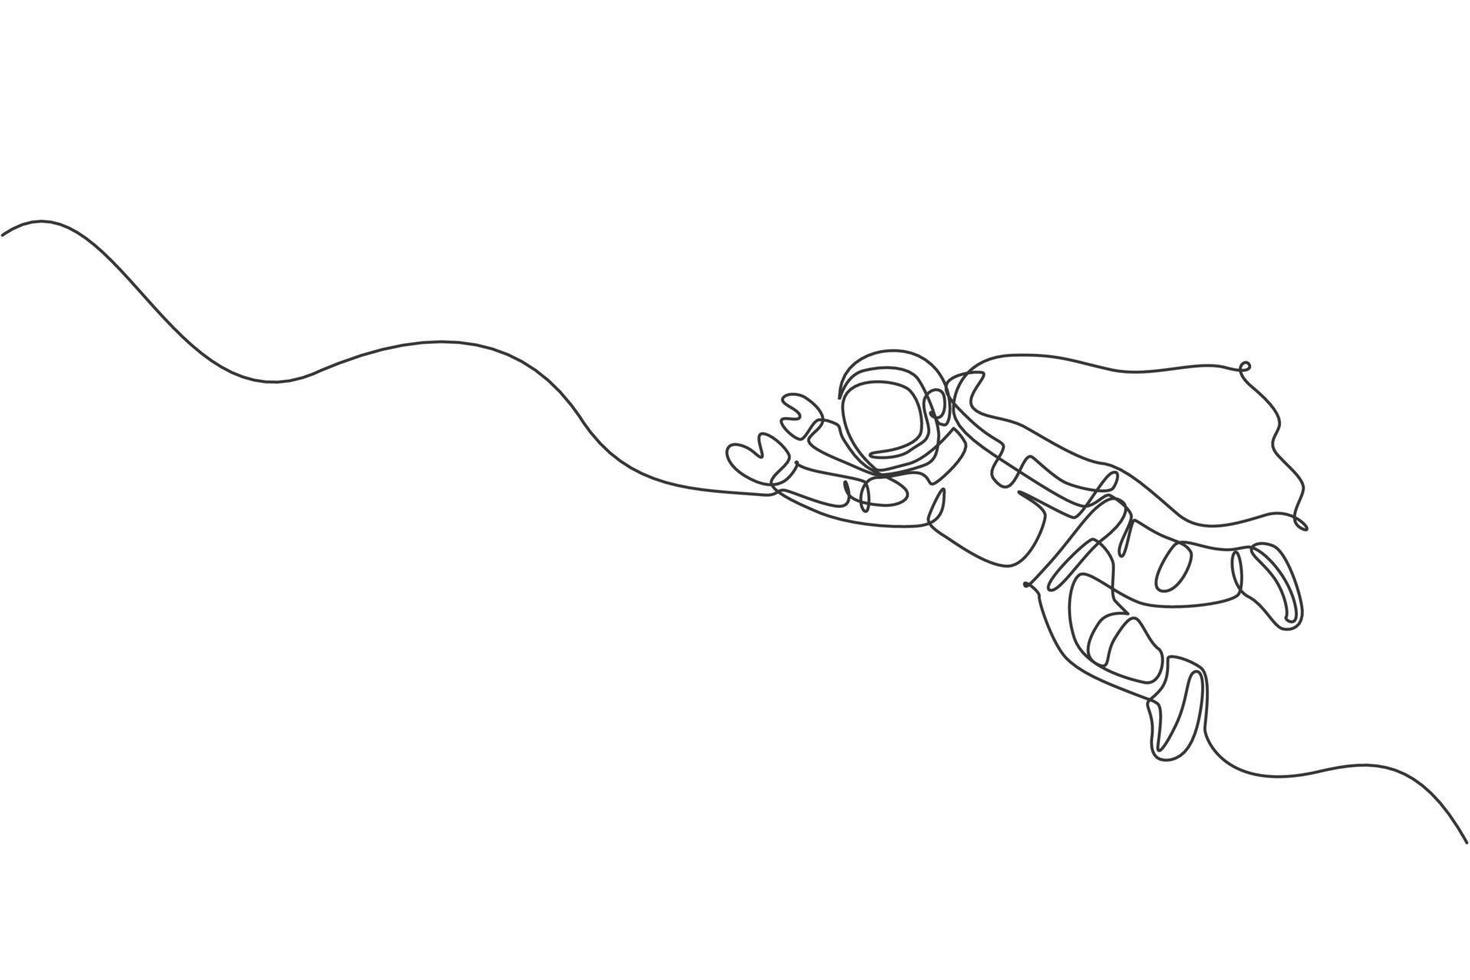 Dibujo de línea continua única astronauta de ciencia flotante en vuelo espacial con traje de ala. exploración del espacio profundo de fantasía, concepto de ficción. Ilustración gráfica de vector de diseño de dibujo de una línea de moda